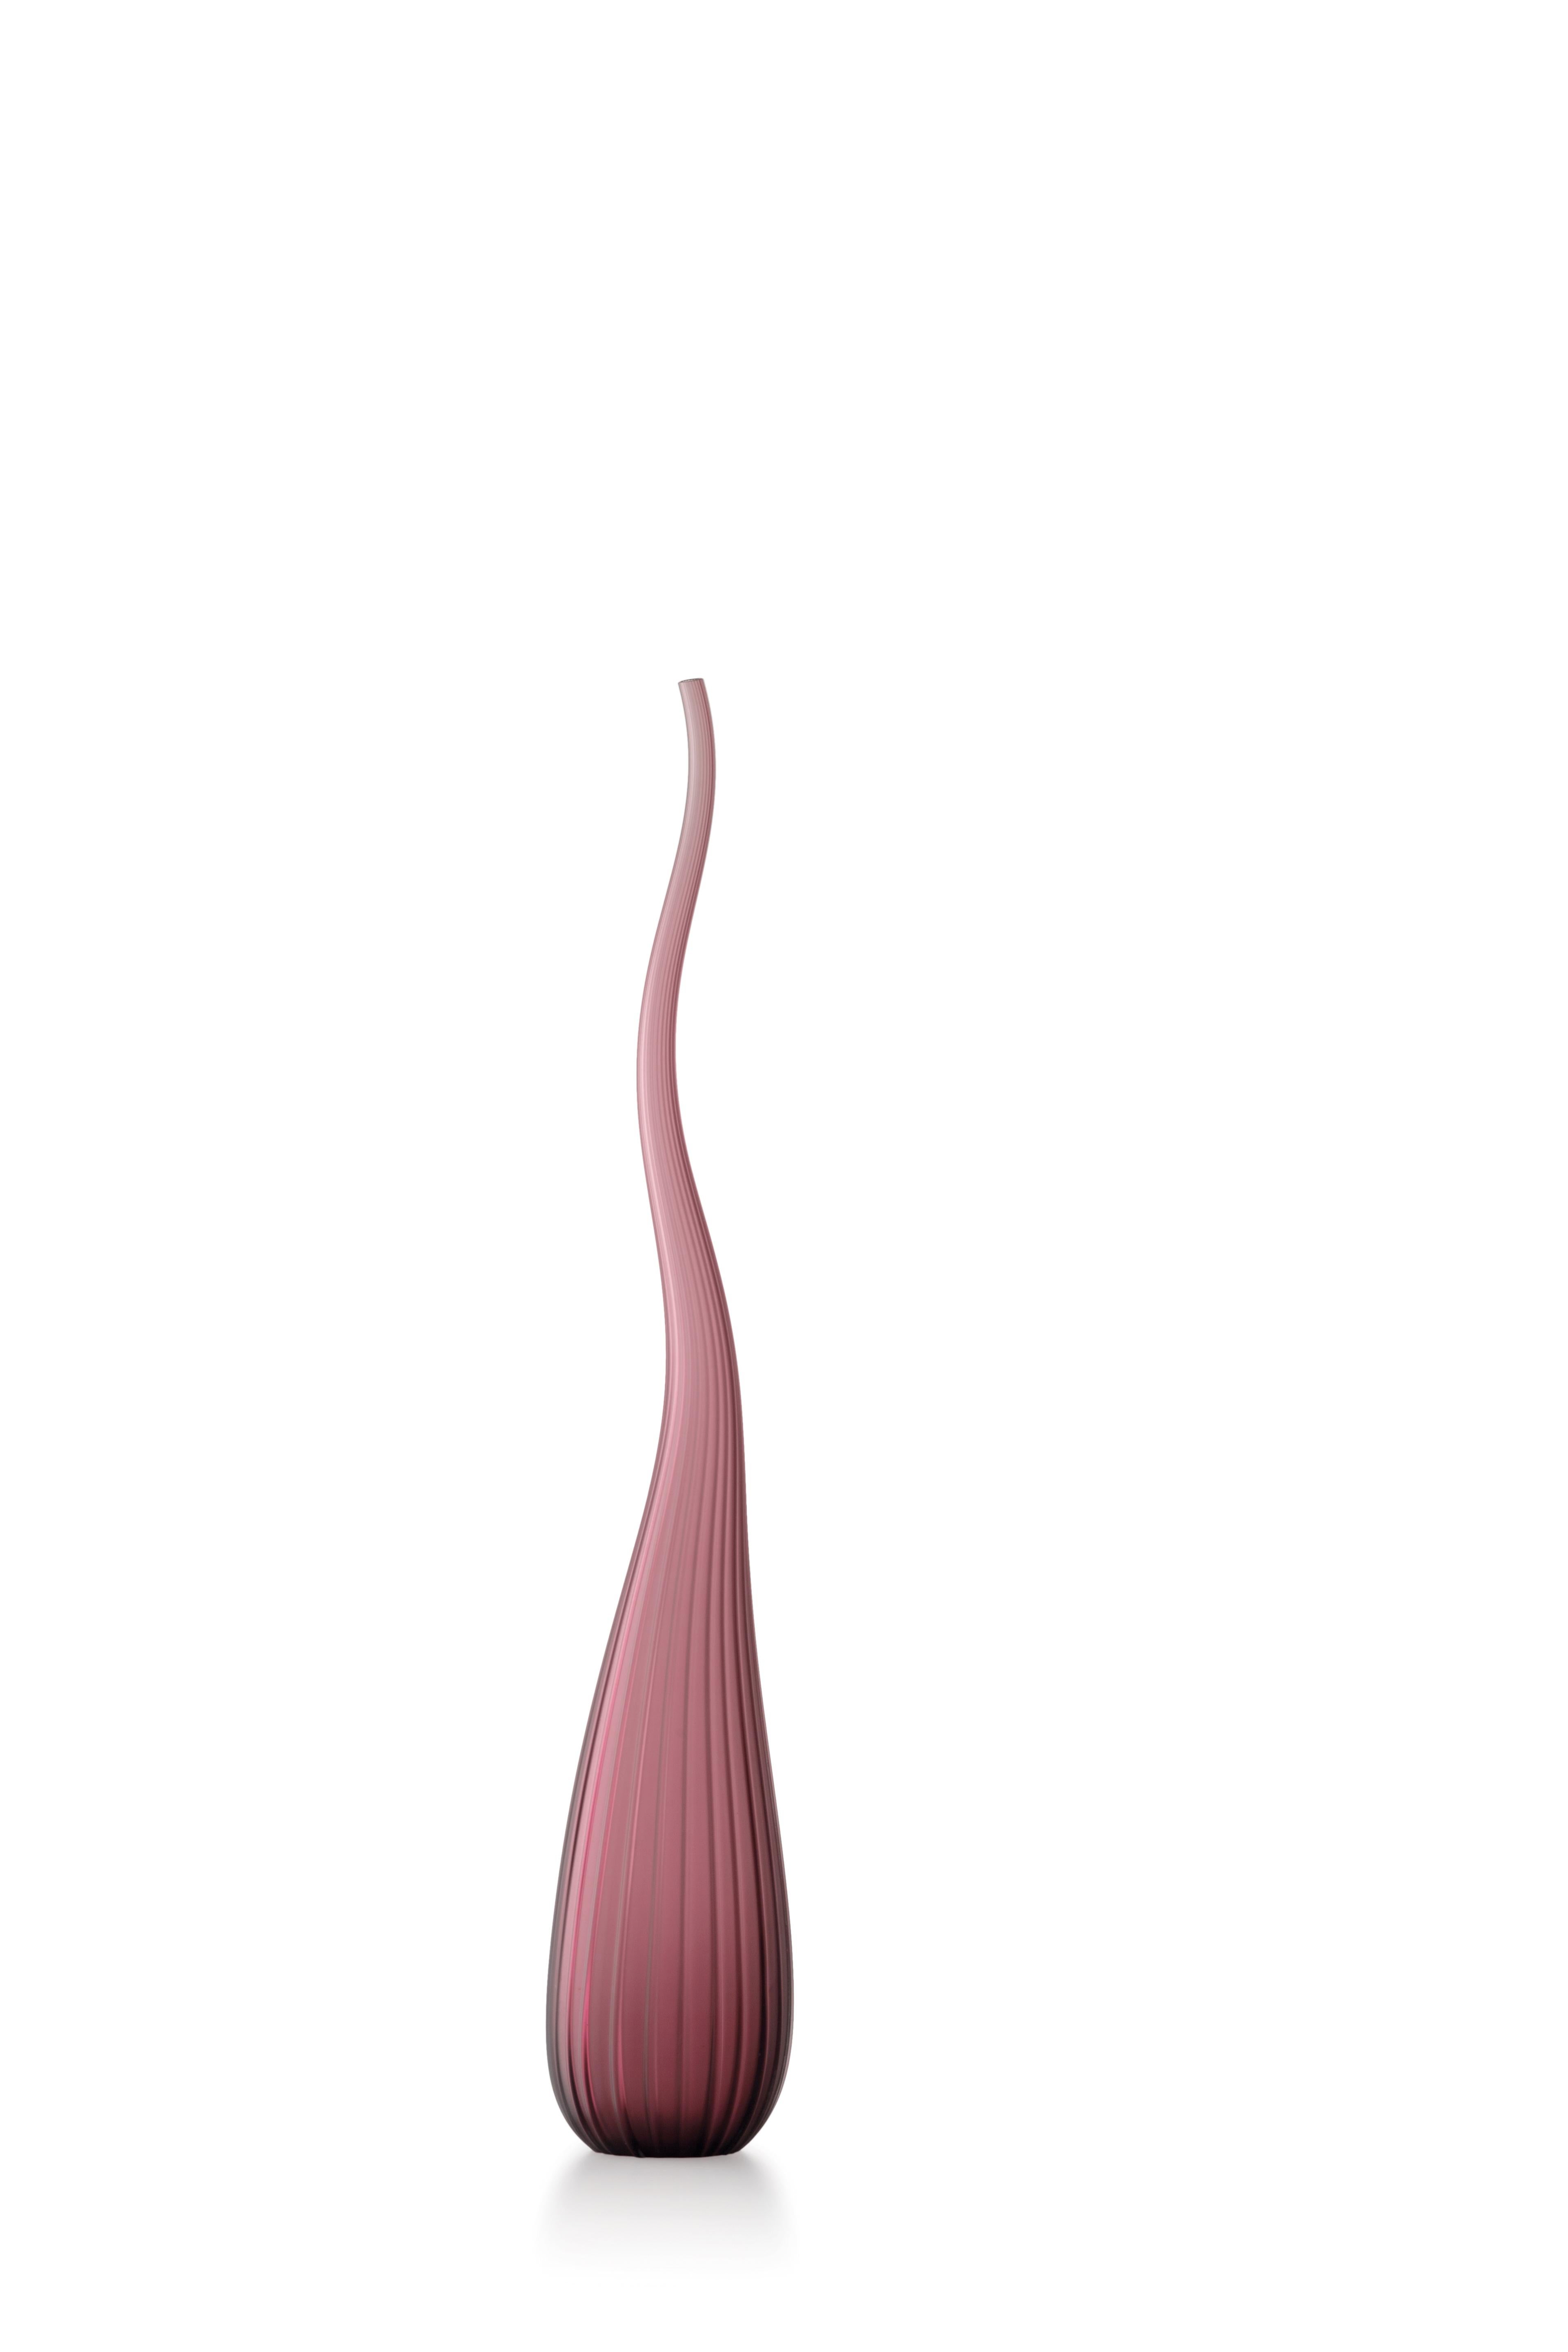 Purple (3749) Small Aria Satinato Vase in Hand Blown Murano Glass by Renzo Stellon